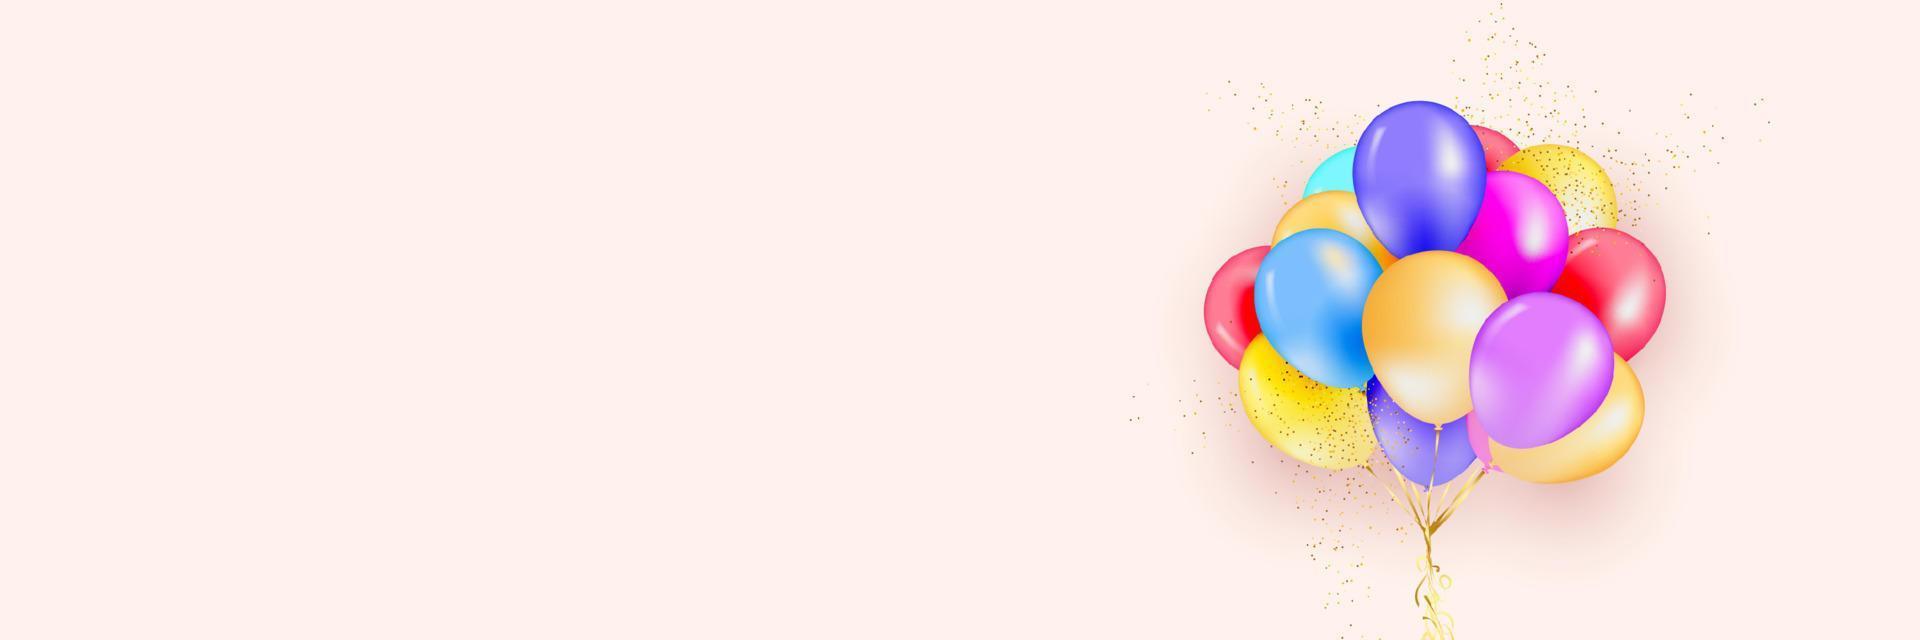 festlicher hintergrund mit heliumballons. feiern sie einen geburtstag, poster, banner alles gute zum jubiläum. realistische dekorative gestaltungselemente. Vektor 3D-Objektballon mit Band, rosa und weißer Farbe